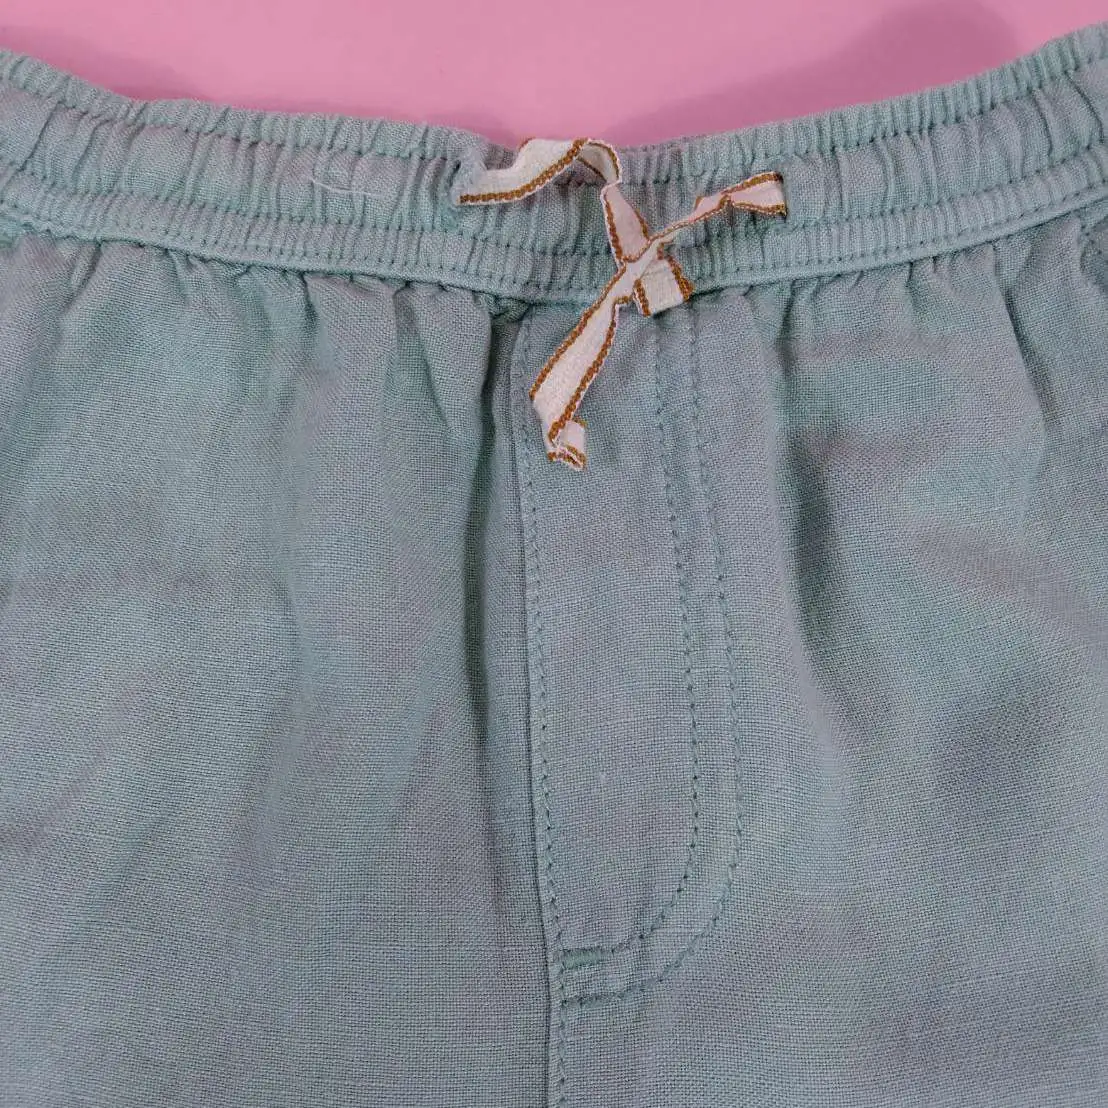 ZARA กางเกงผ้าฝ้ายขายาวสีเขียวไซส์ 4-5y